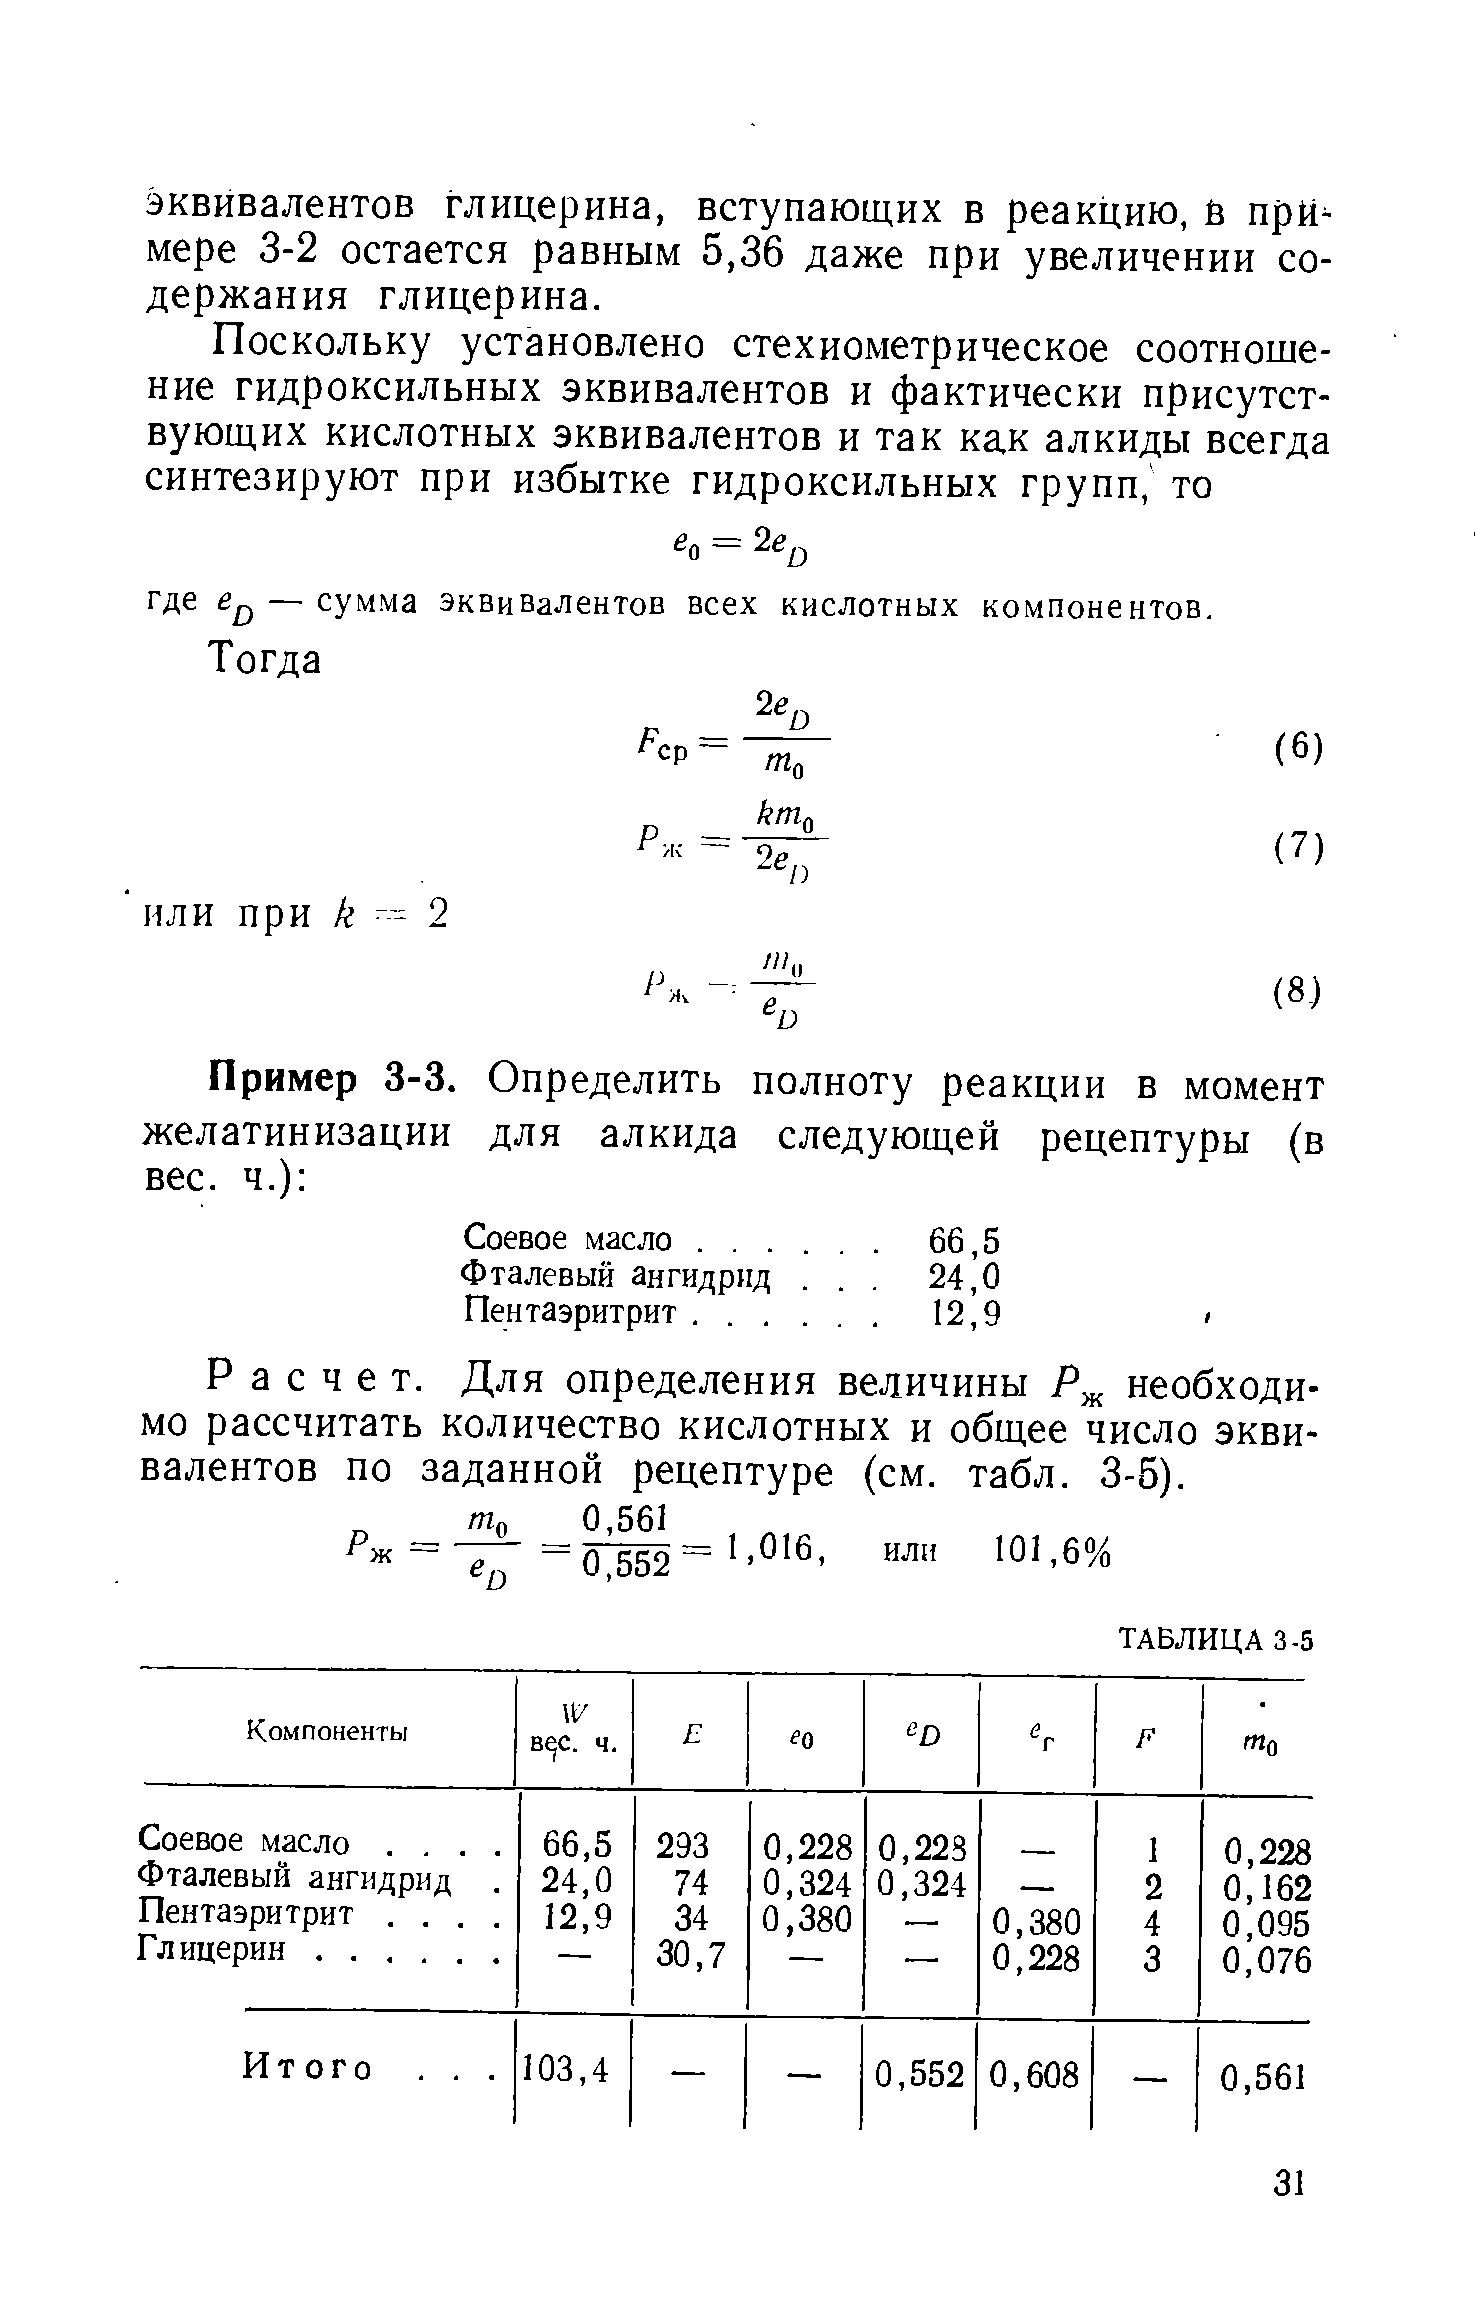 Расчет. Для определения величины Р необходимо рассчитать количество кислотных и общее число эквивалентов по заданной рецептуре (см. табл. 3-5).